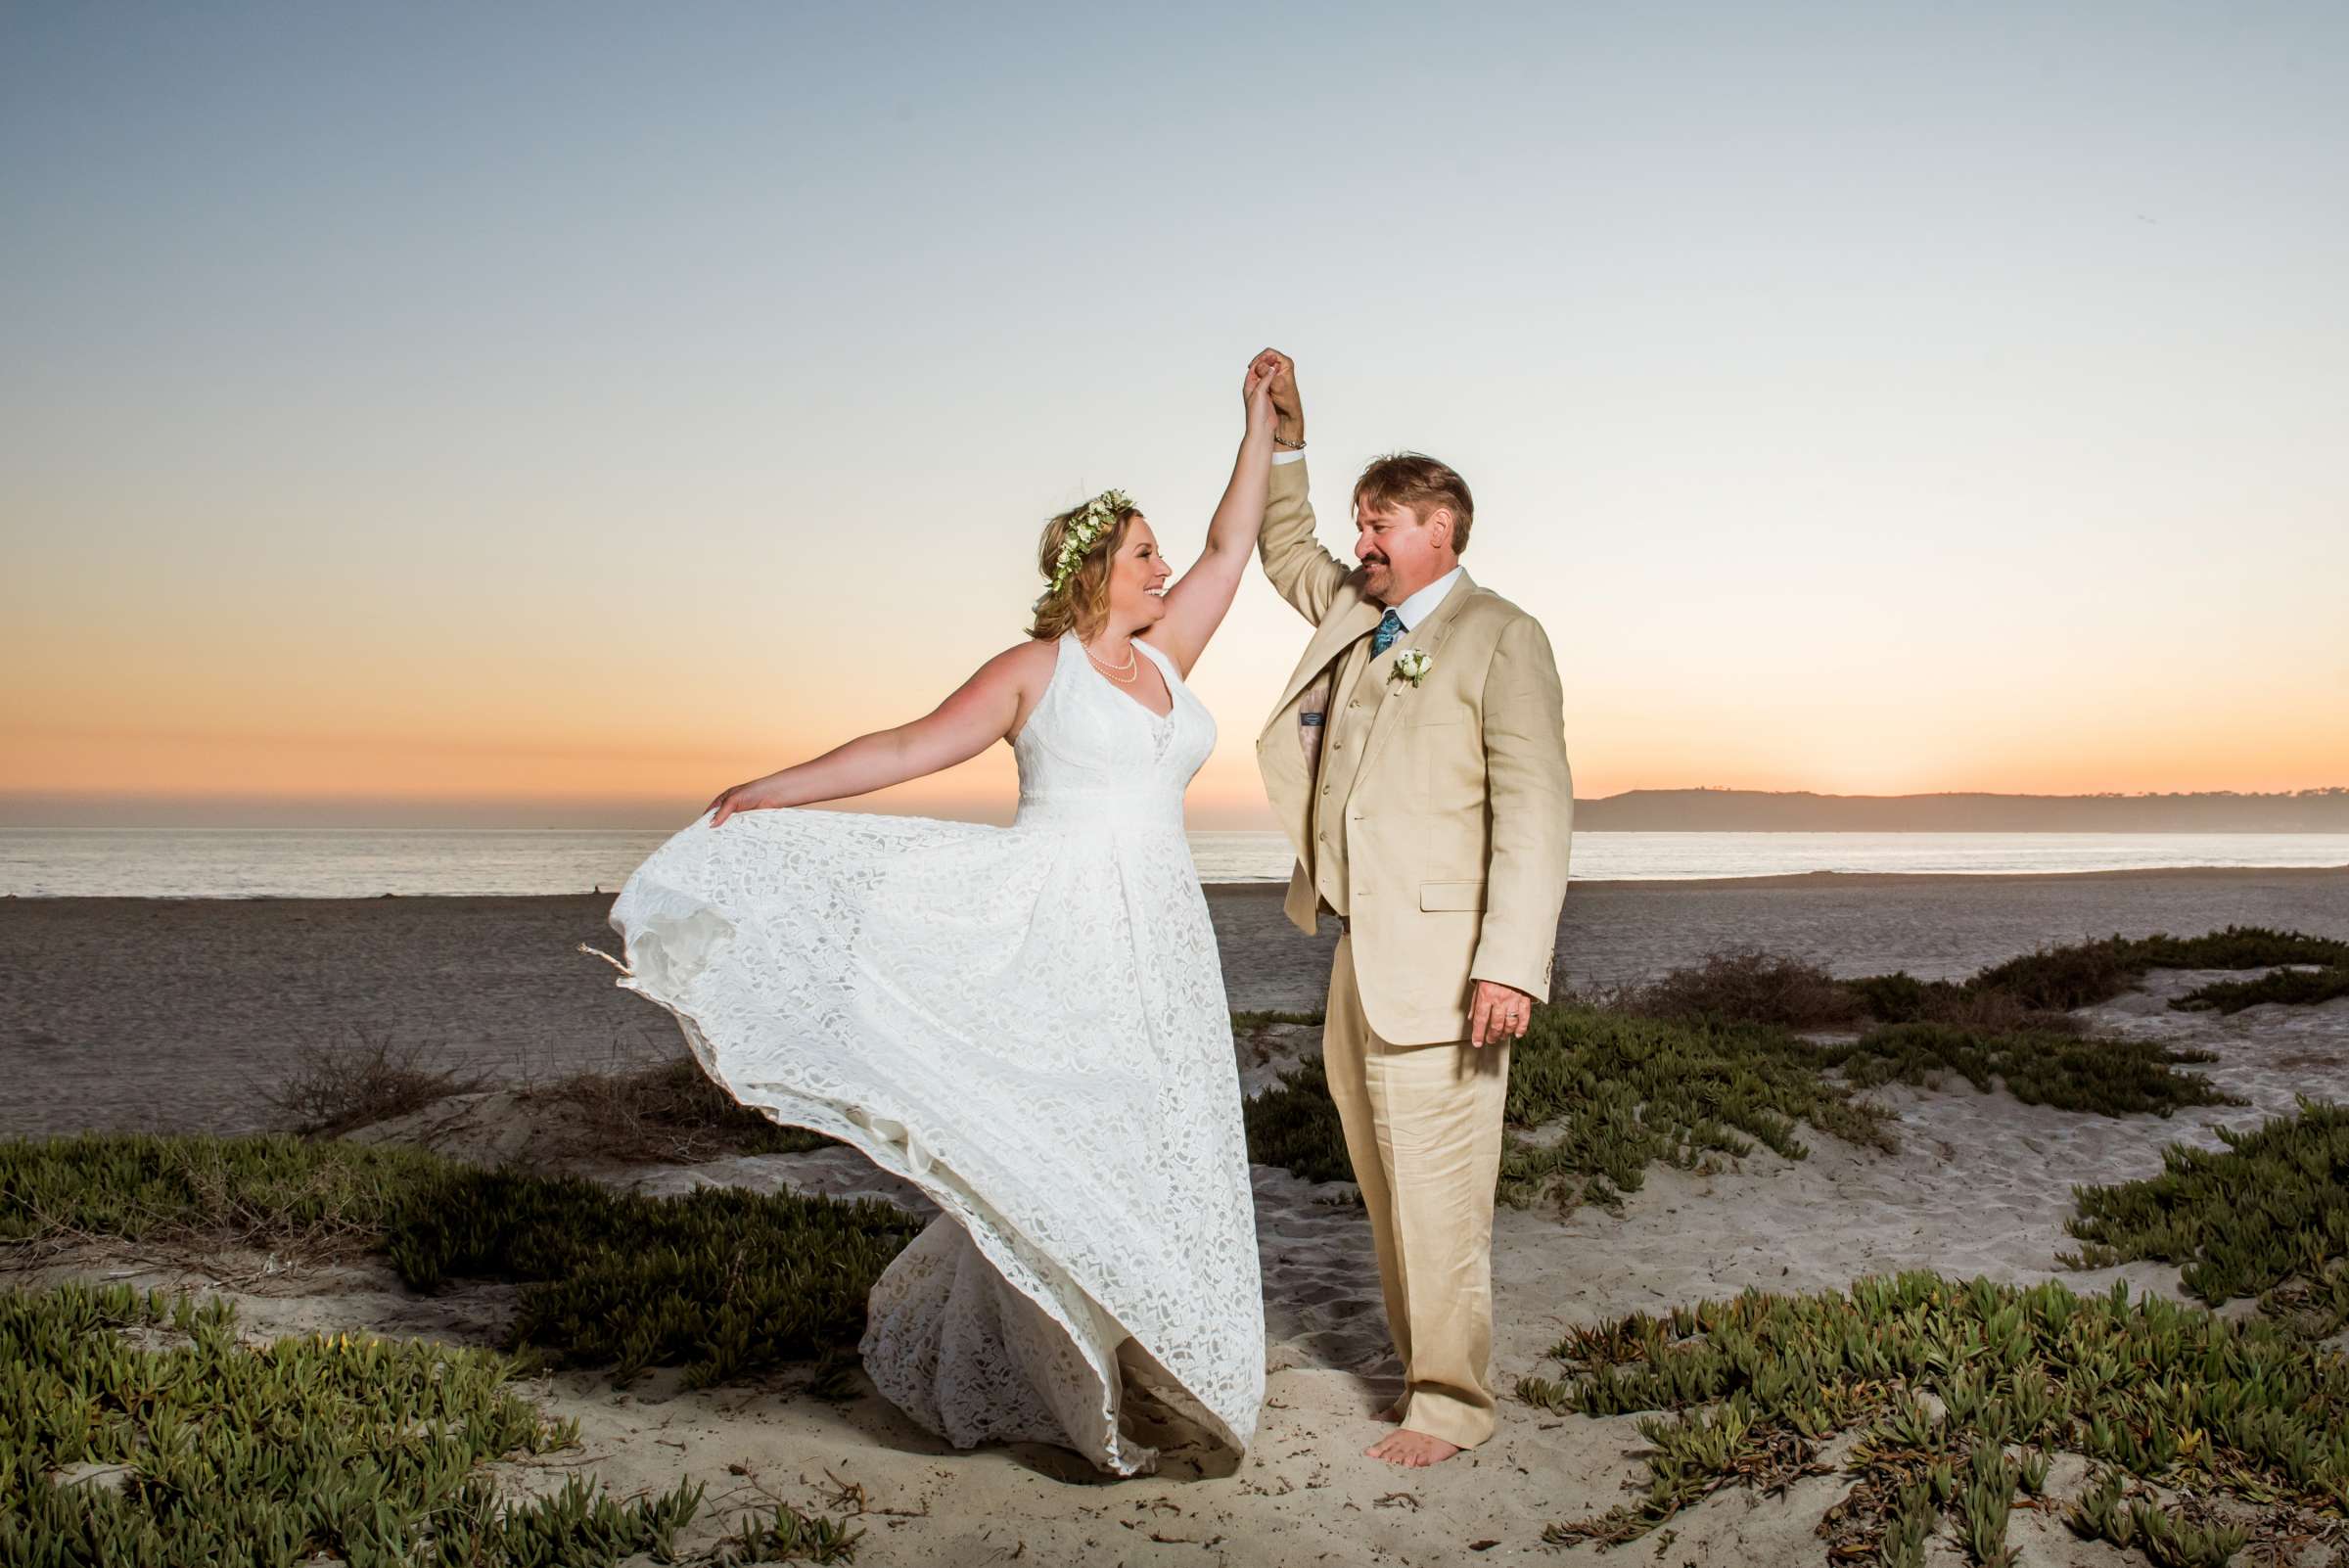 Hotel Del Coronado Wedding, Danielle and Glenn Wedding Photo #50 by True Photography